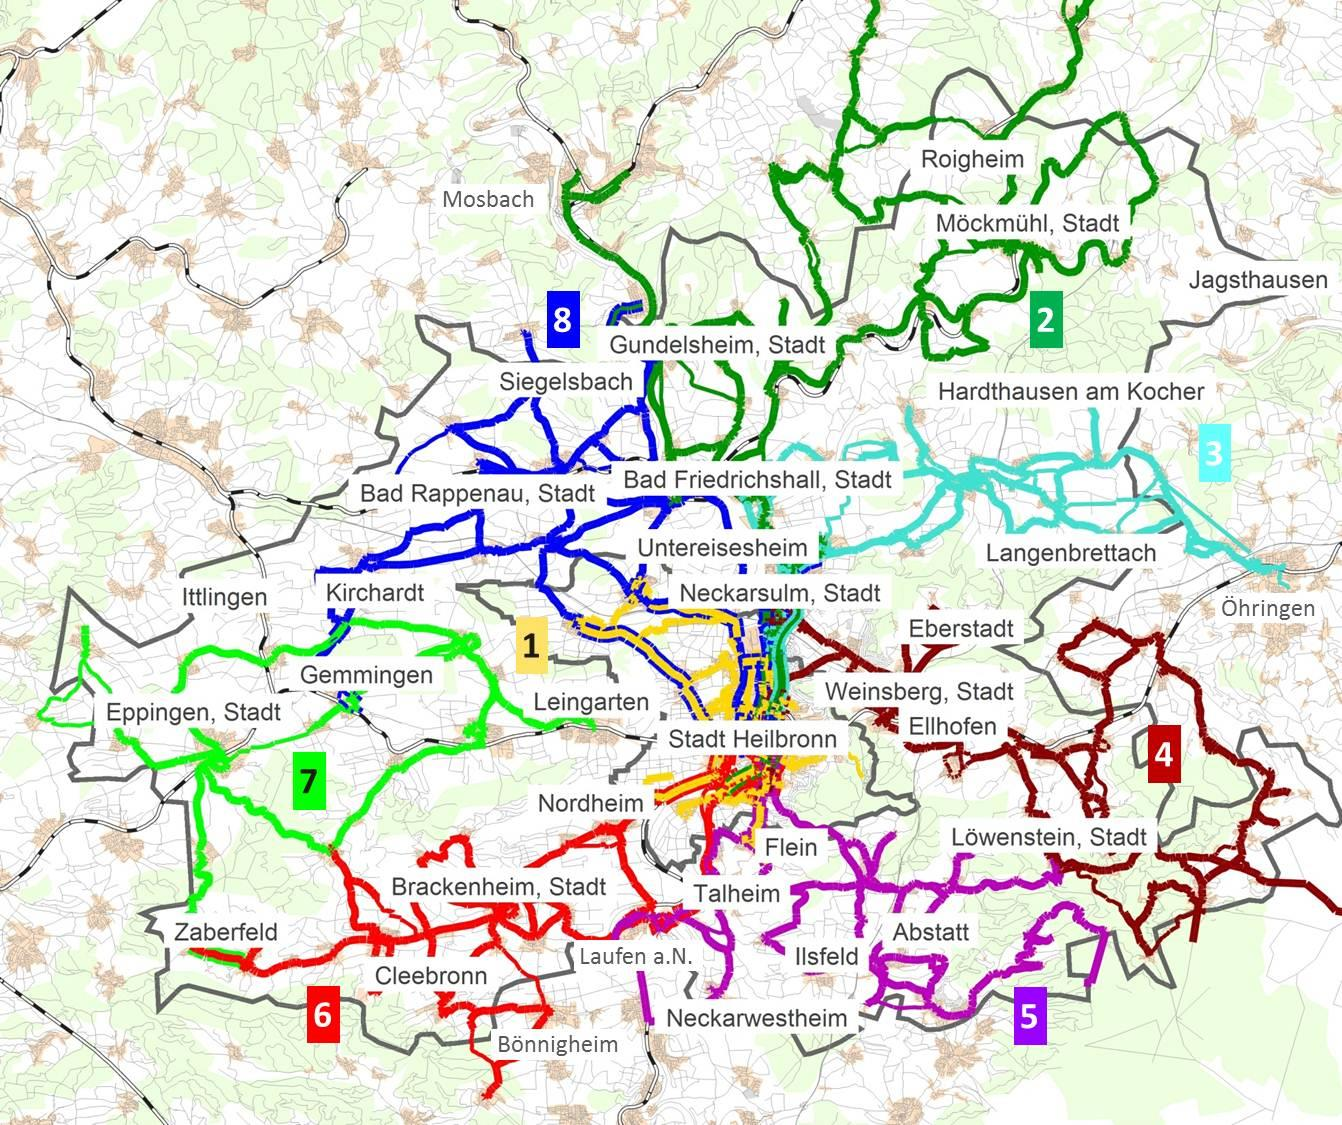 Linienbündelungskonzept Es hat sich gezeigt, dass für die Stadt und den Landkreis Heilbronn die Aufgliederung des bestehenden Liniennetzes in insgesamt 8 Bündel den gestellten Anforderungen am